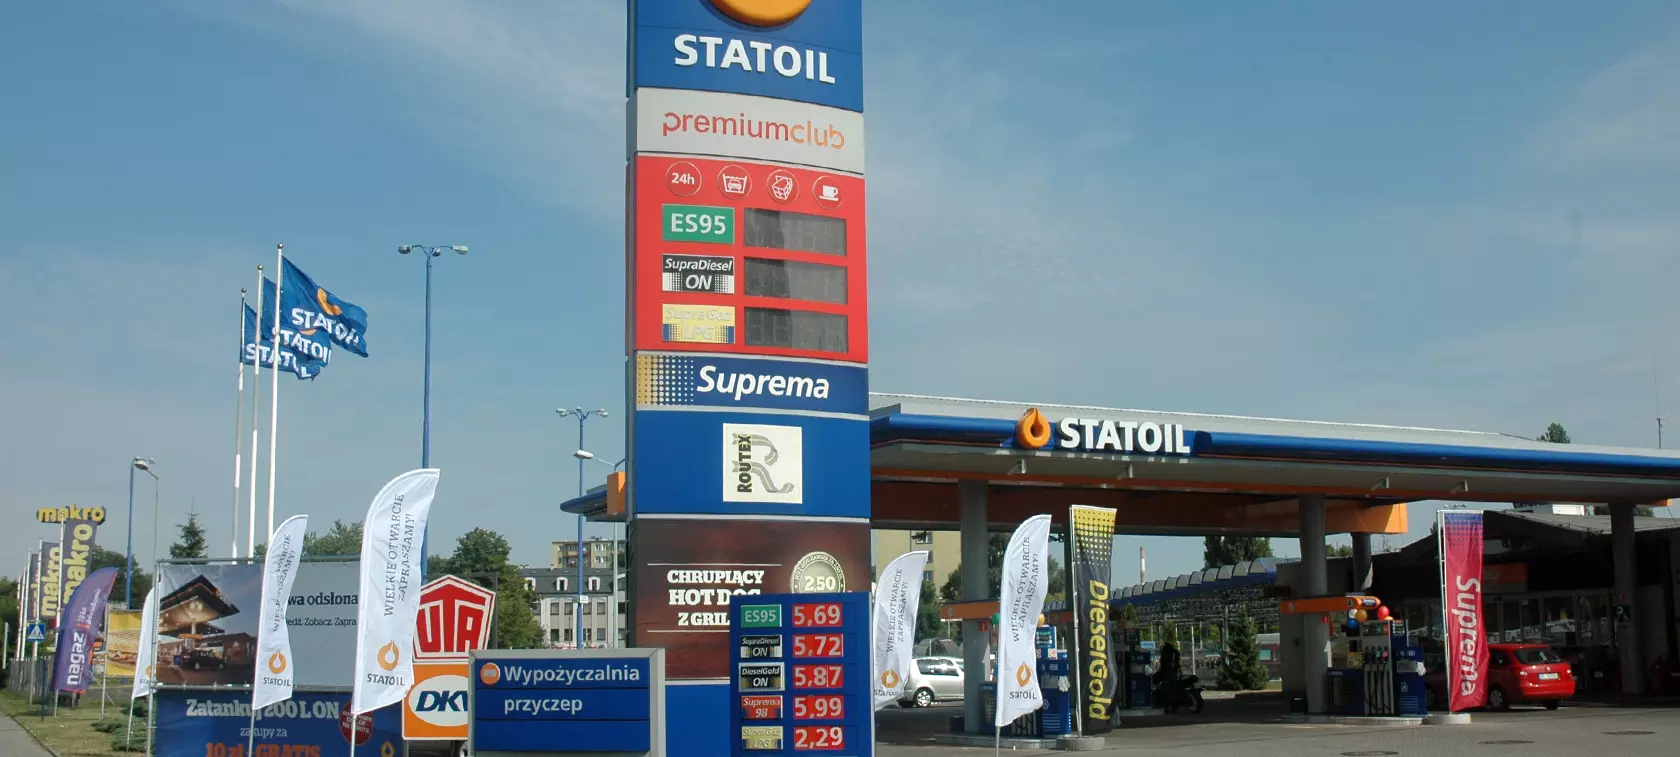 Statoil - samoobsługa LPG już jest